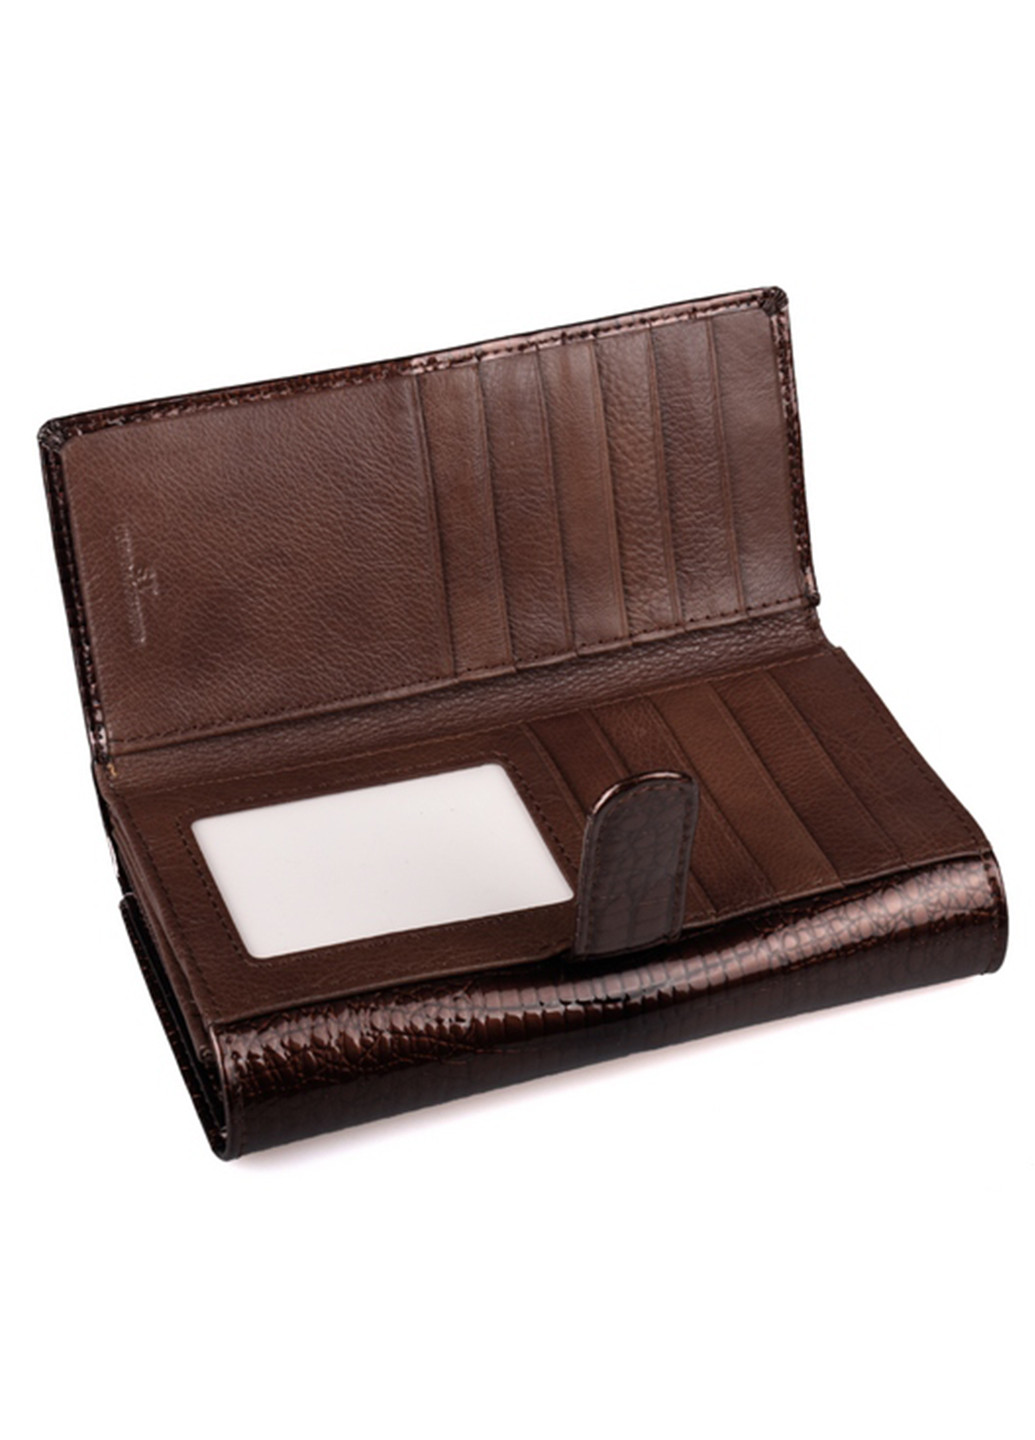 Женский кожаный кошелек с визитницей ST s9001a (277359154)